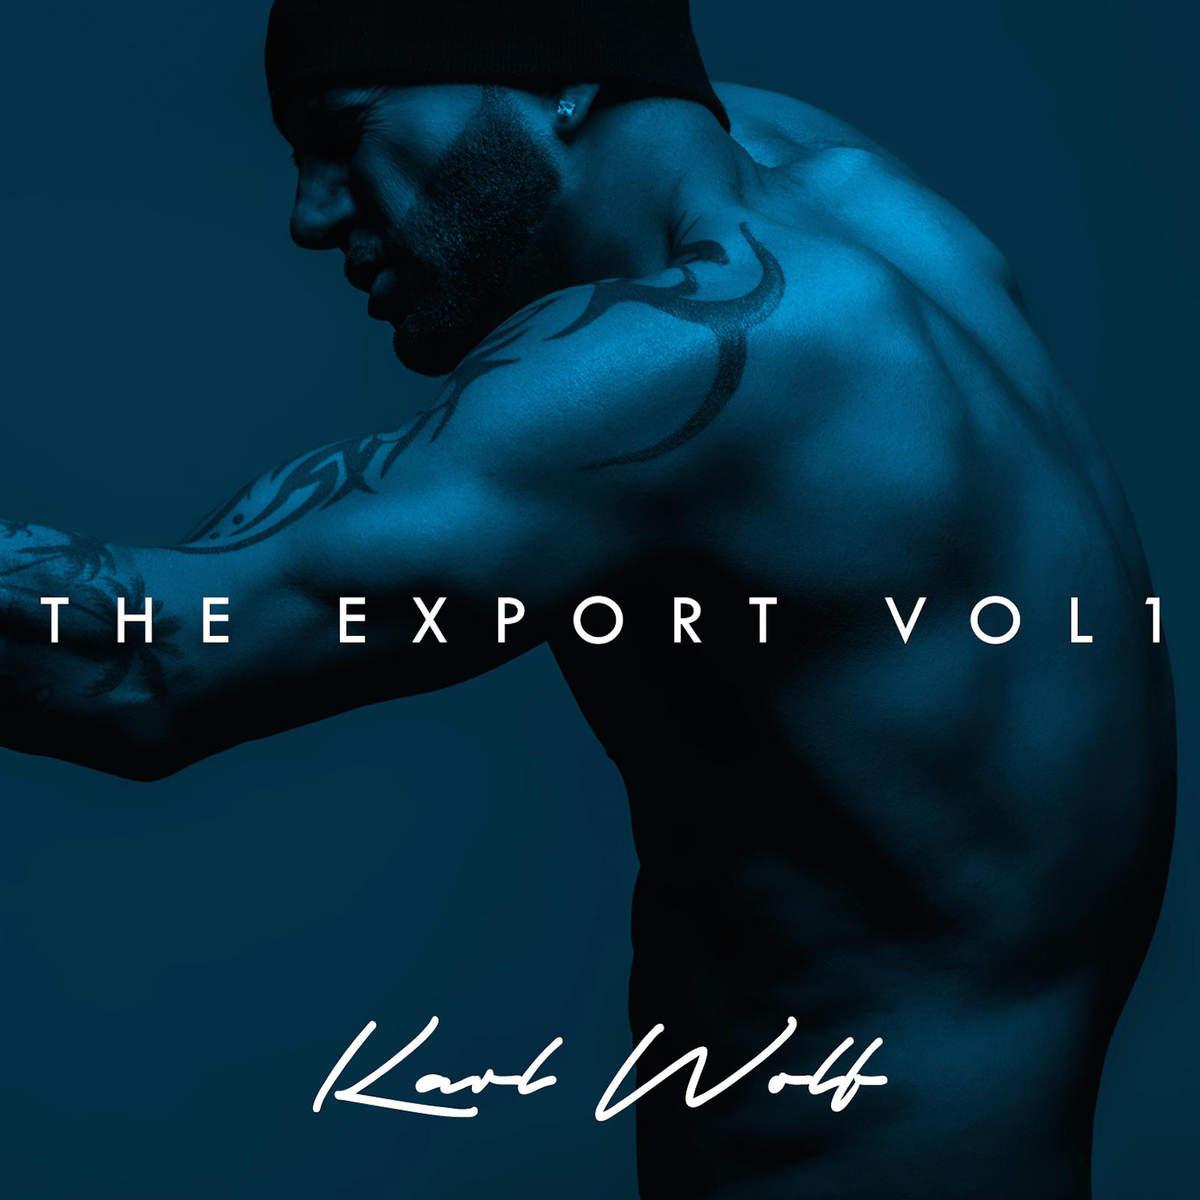 The Export Vol. 1